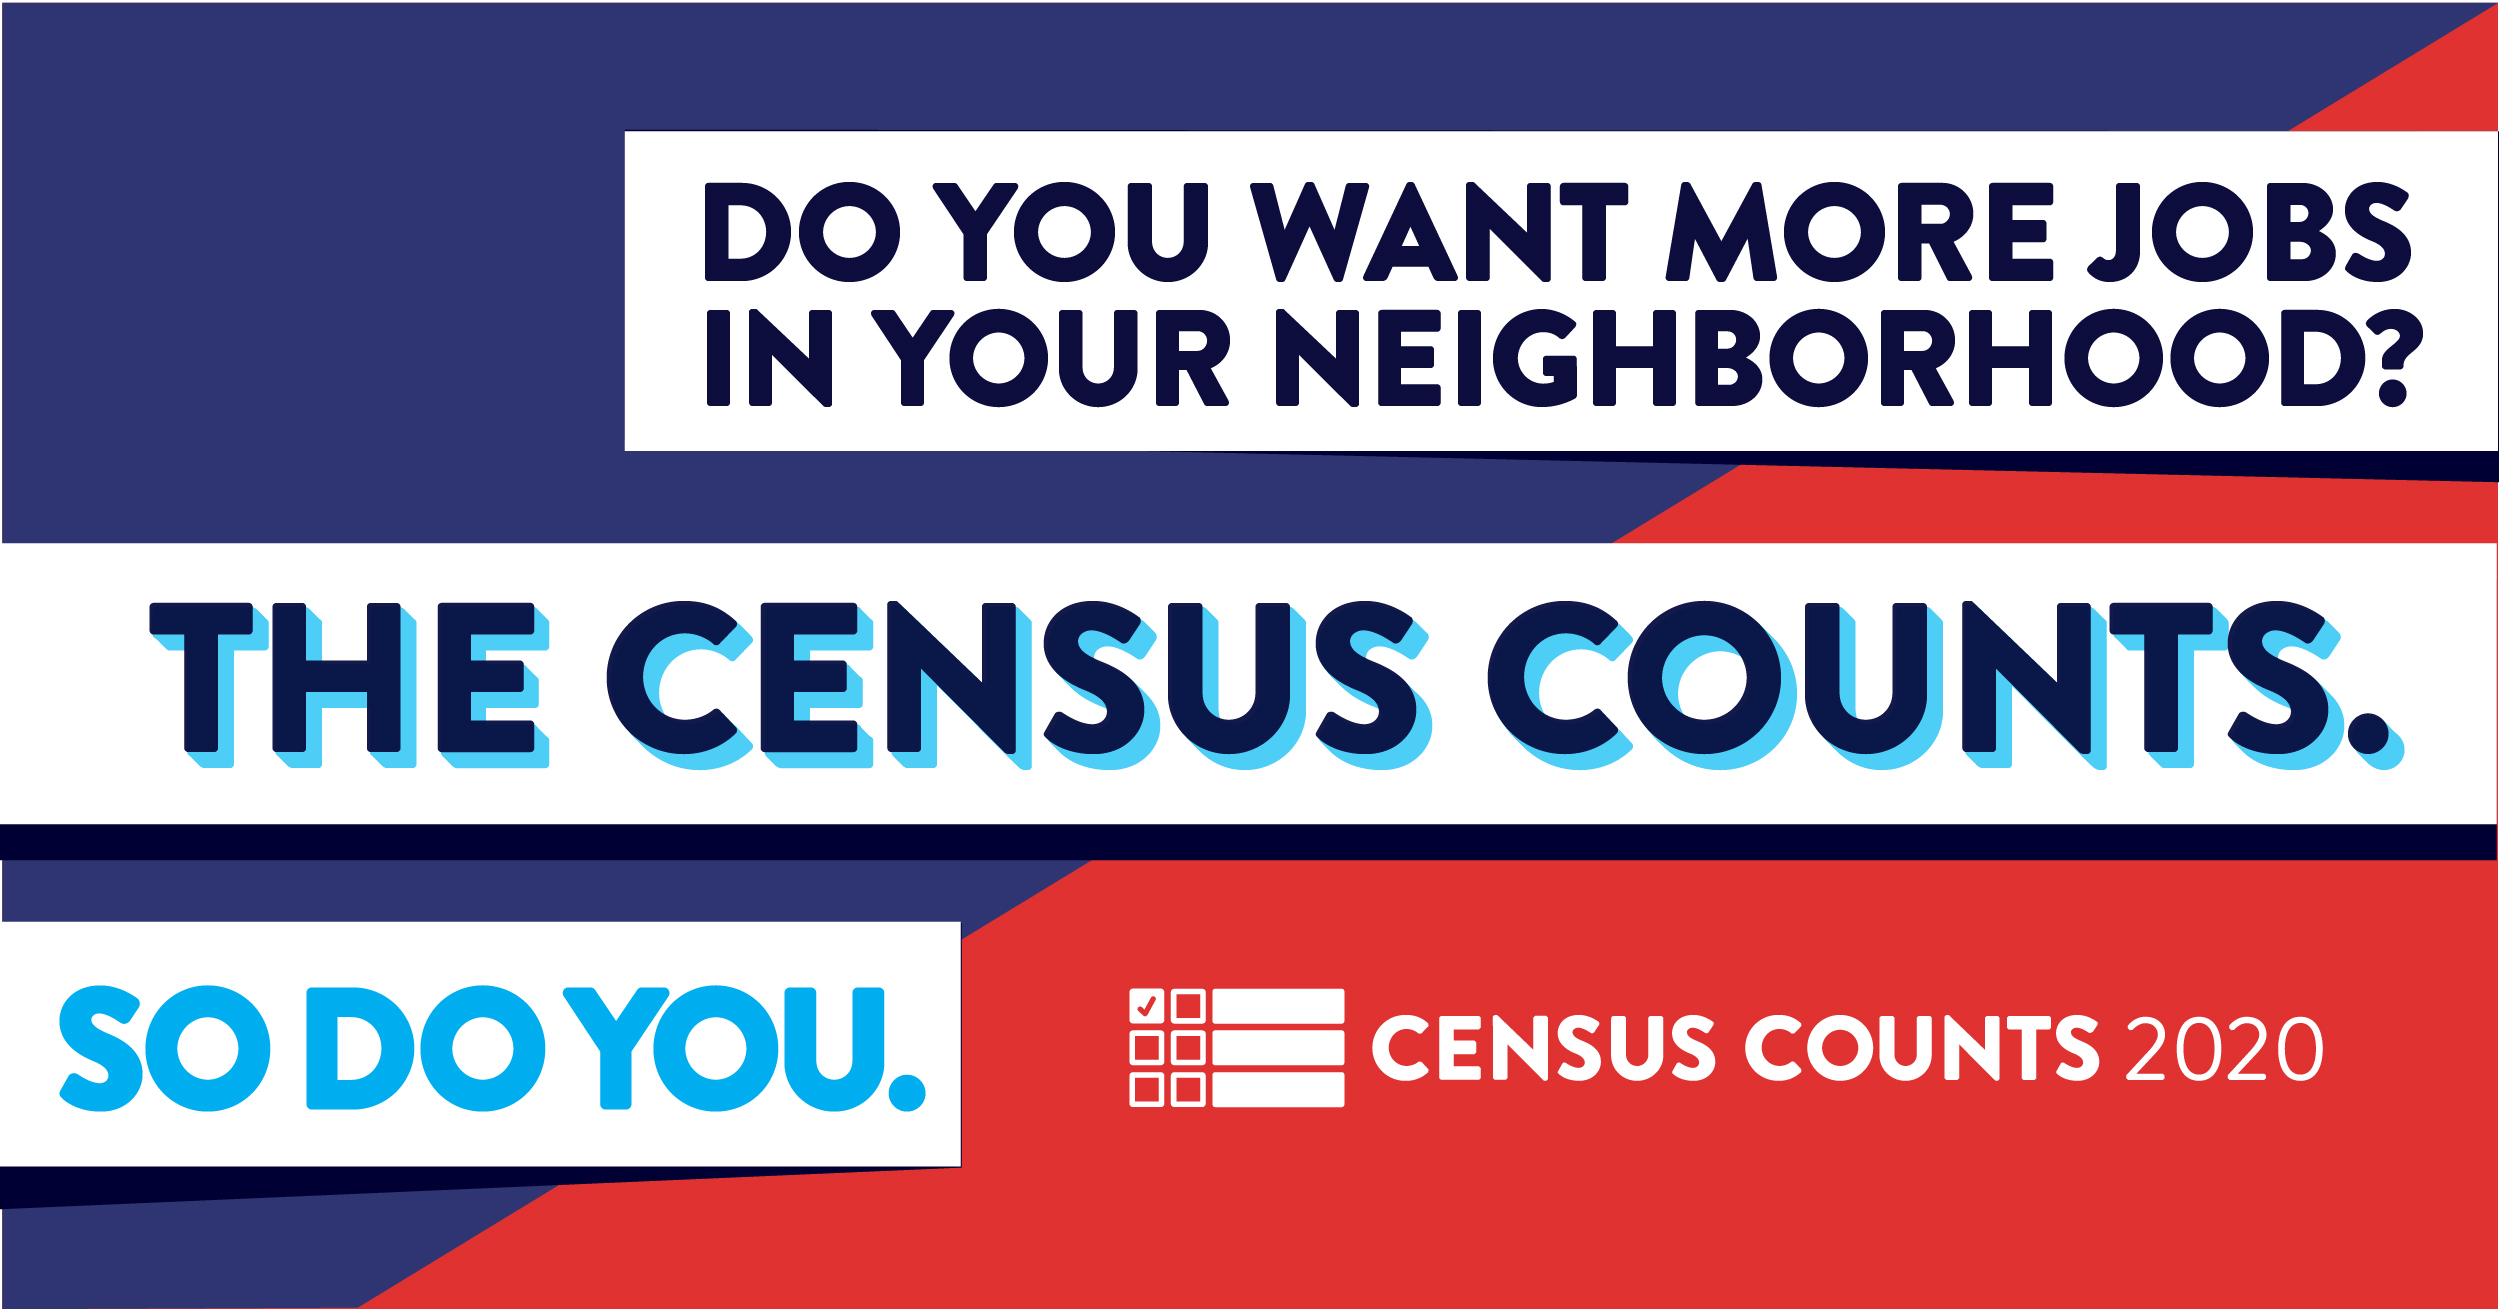 Groups File Amicus Brief in SCOTUS 2020 Census Citizenship Case